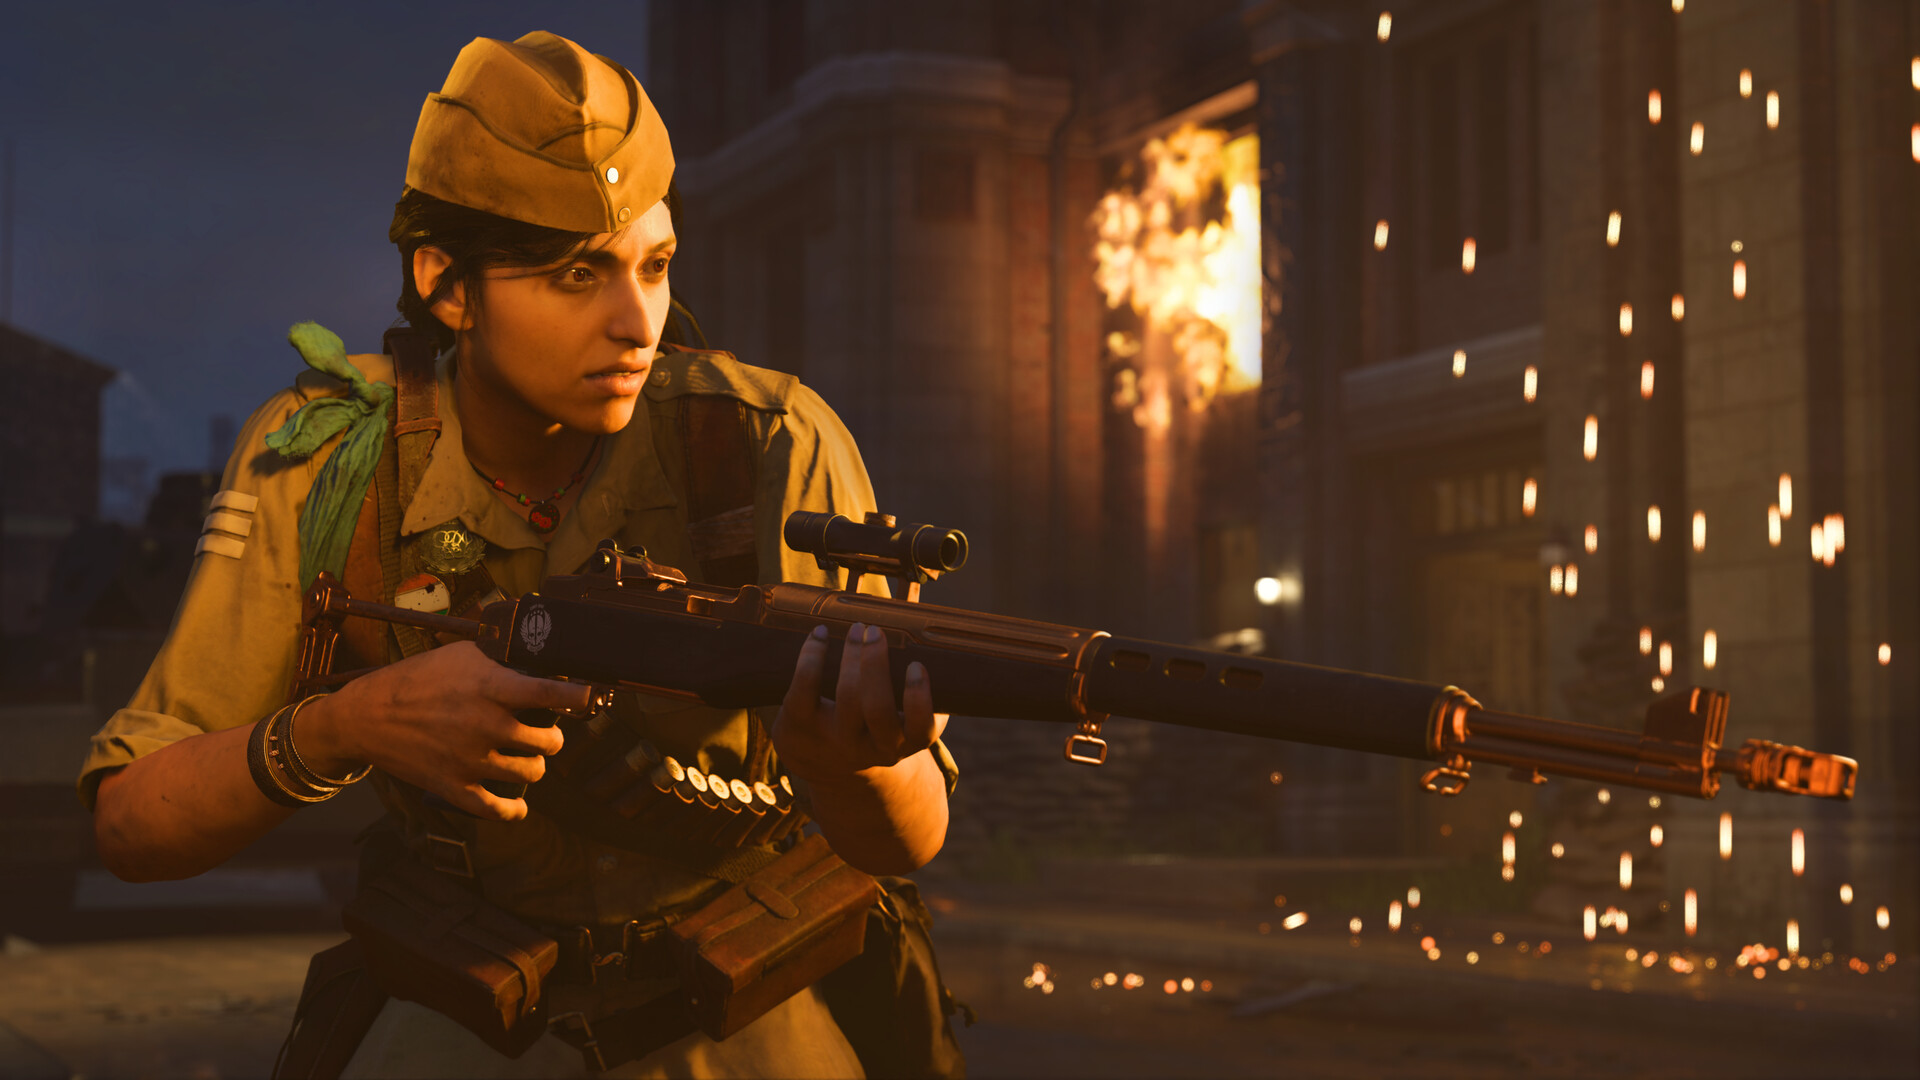 Call of Duty: Vanguard - Requisitos para o PC